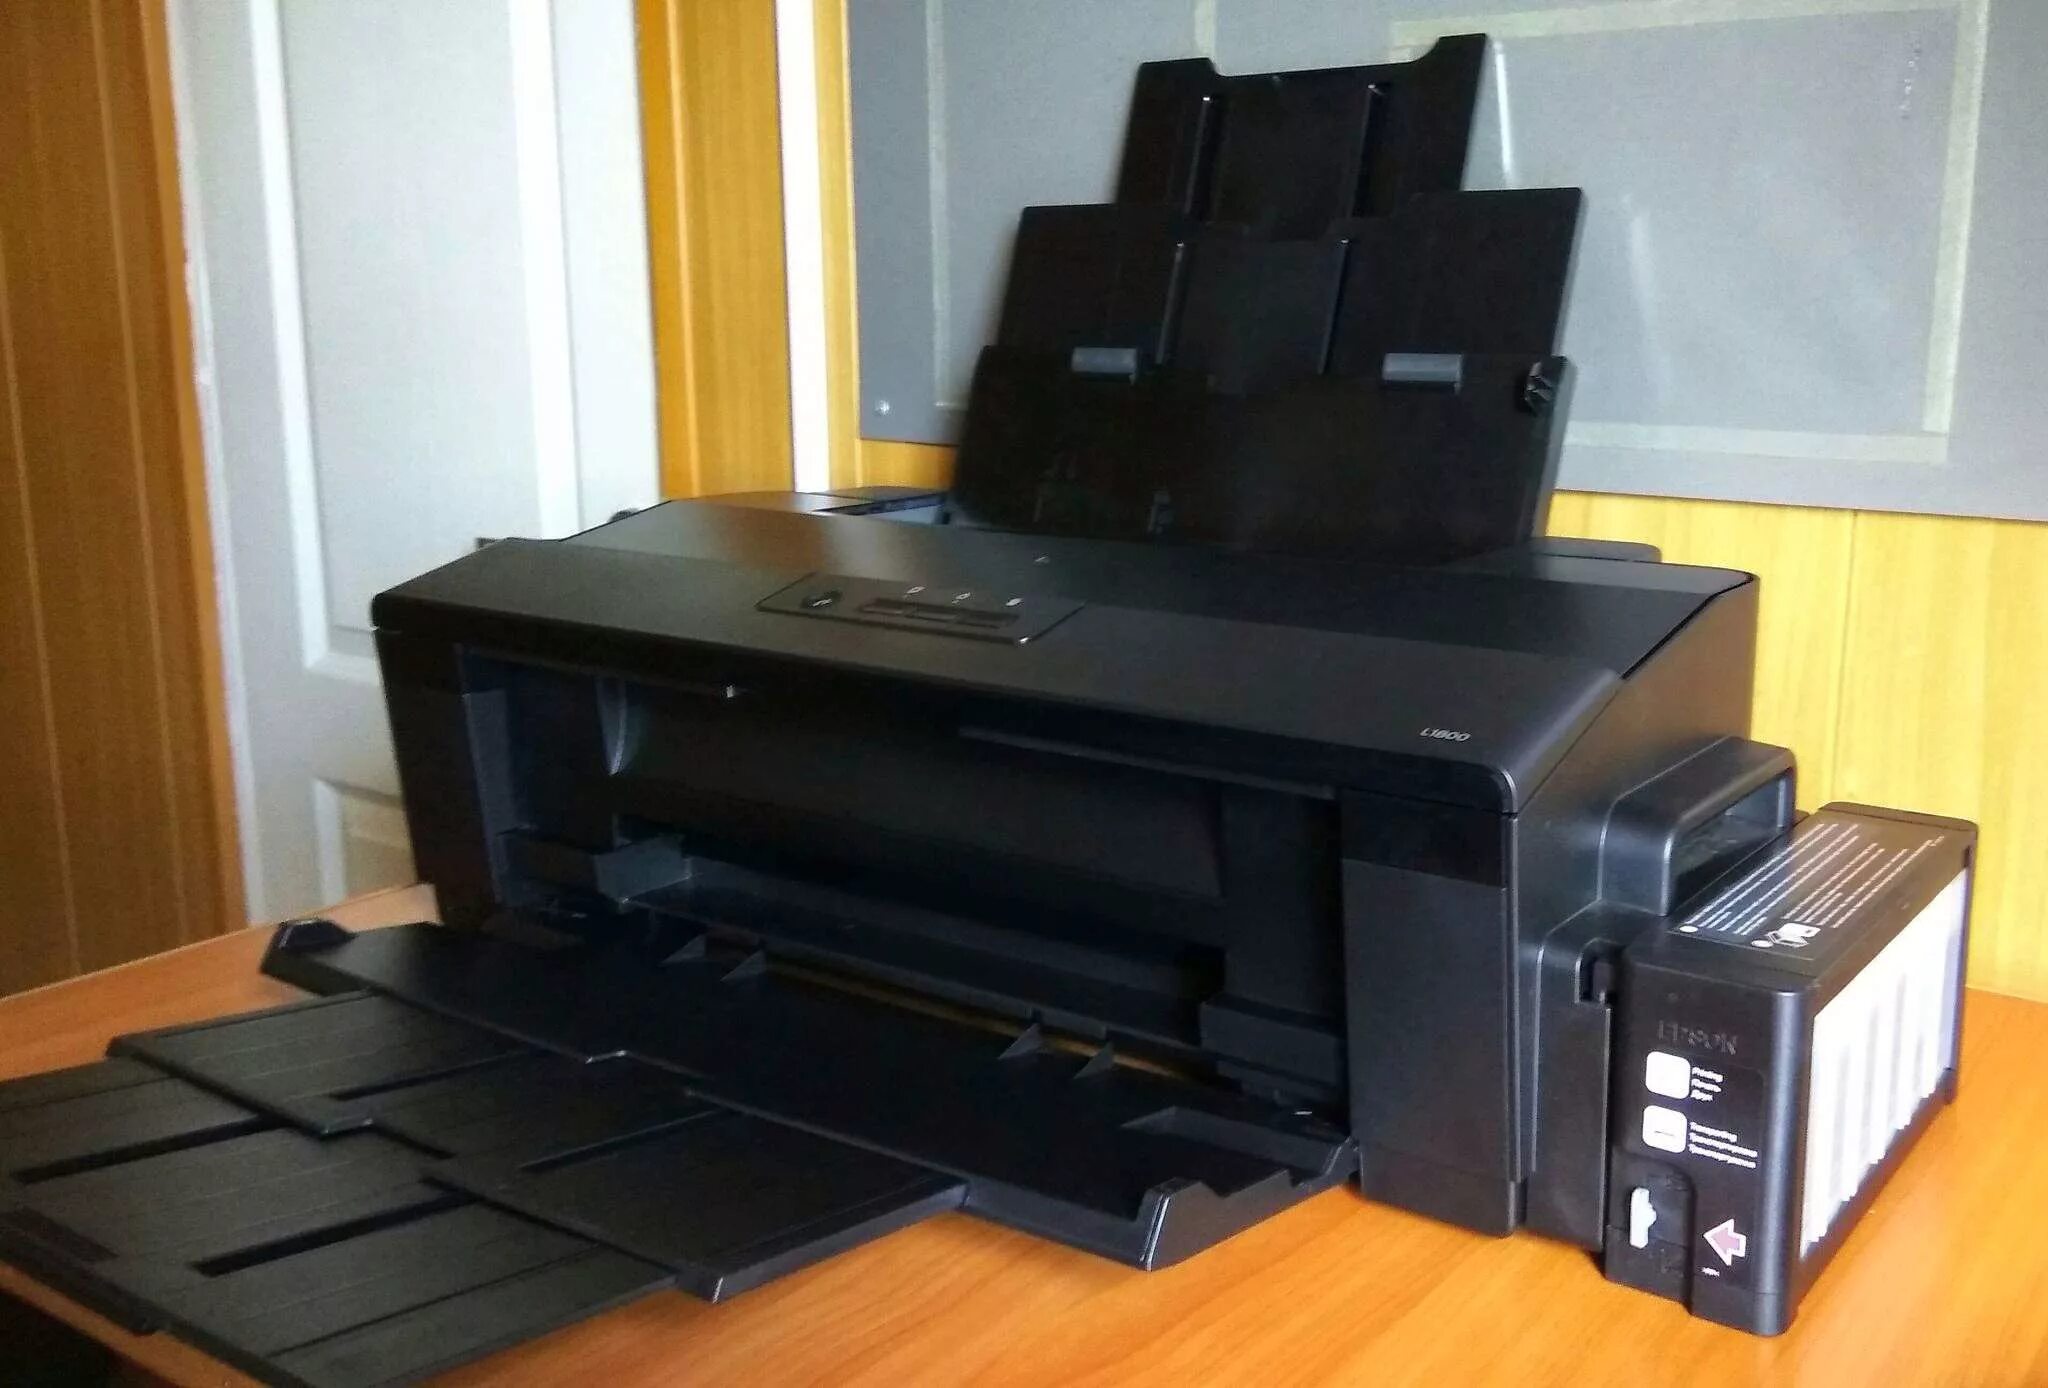 Принтер Epson l1800. Epson i1800. L-1800. Epson l1800, цветн., a3.